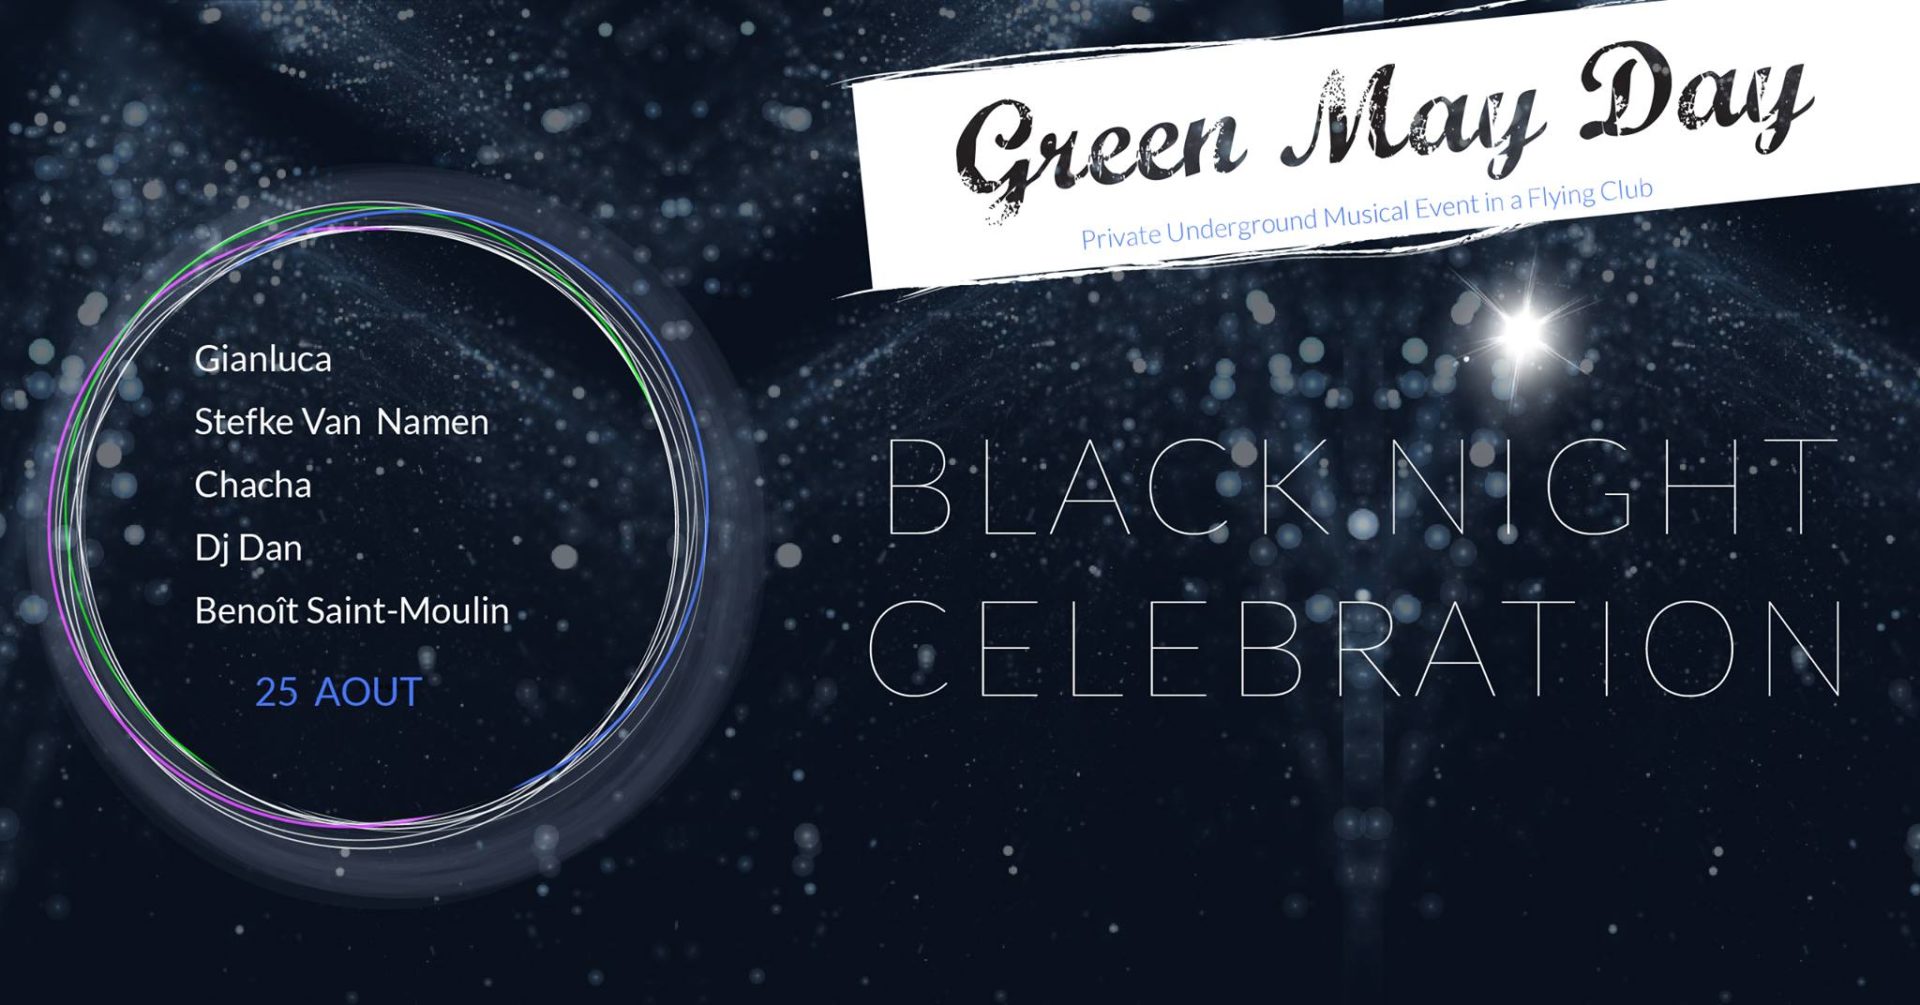 green mayday black night celebration